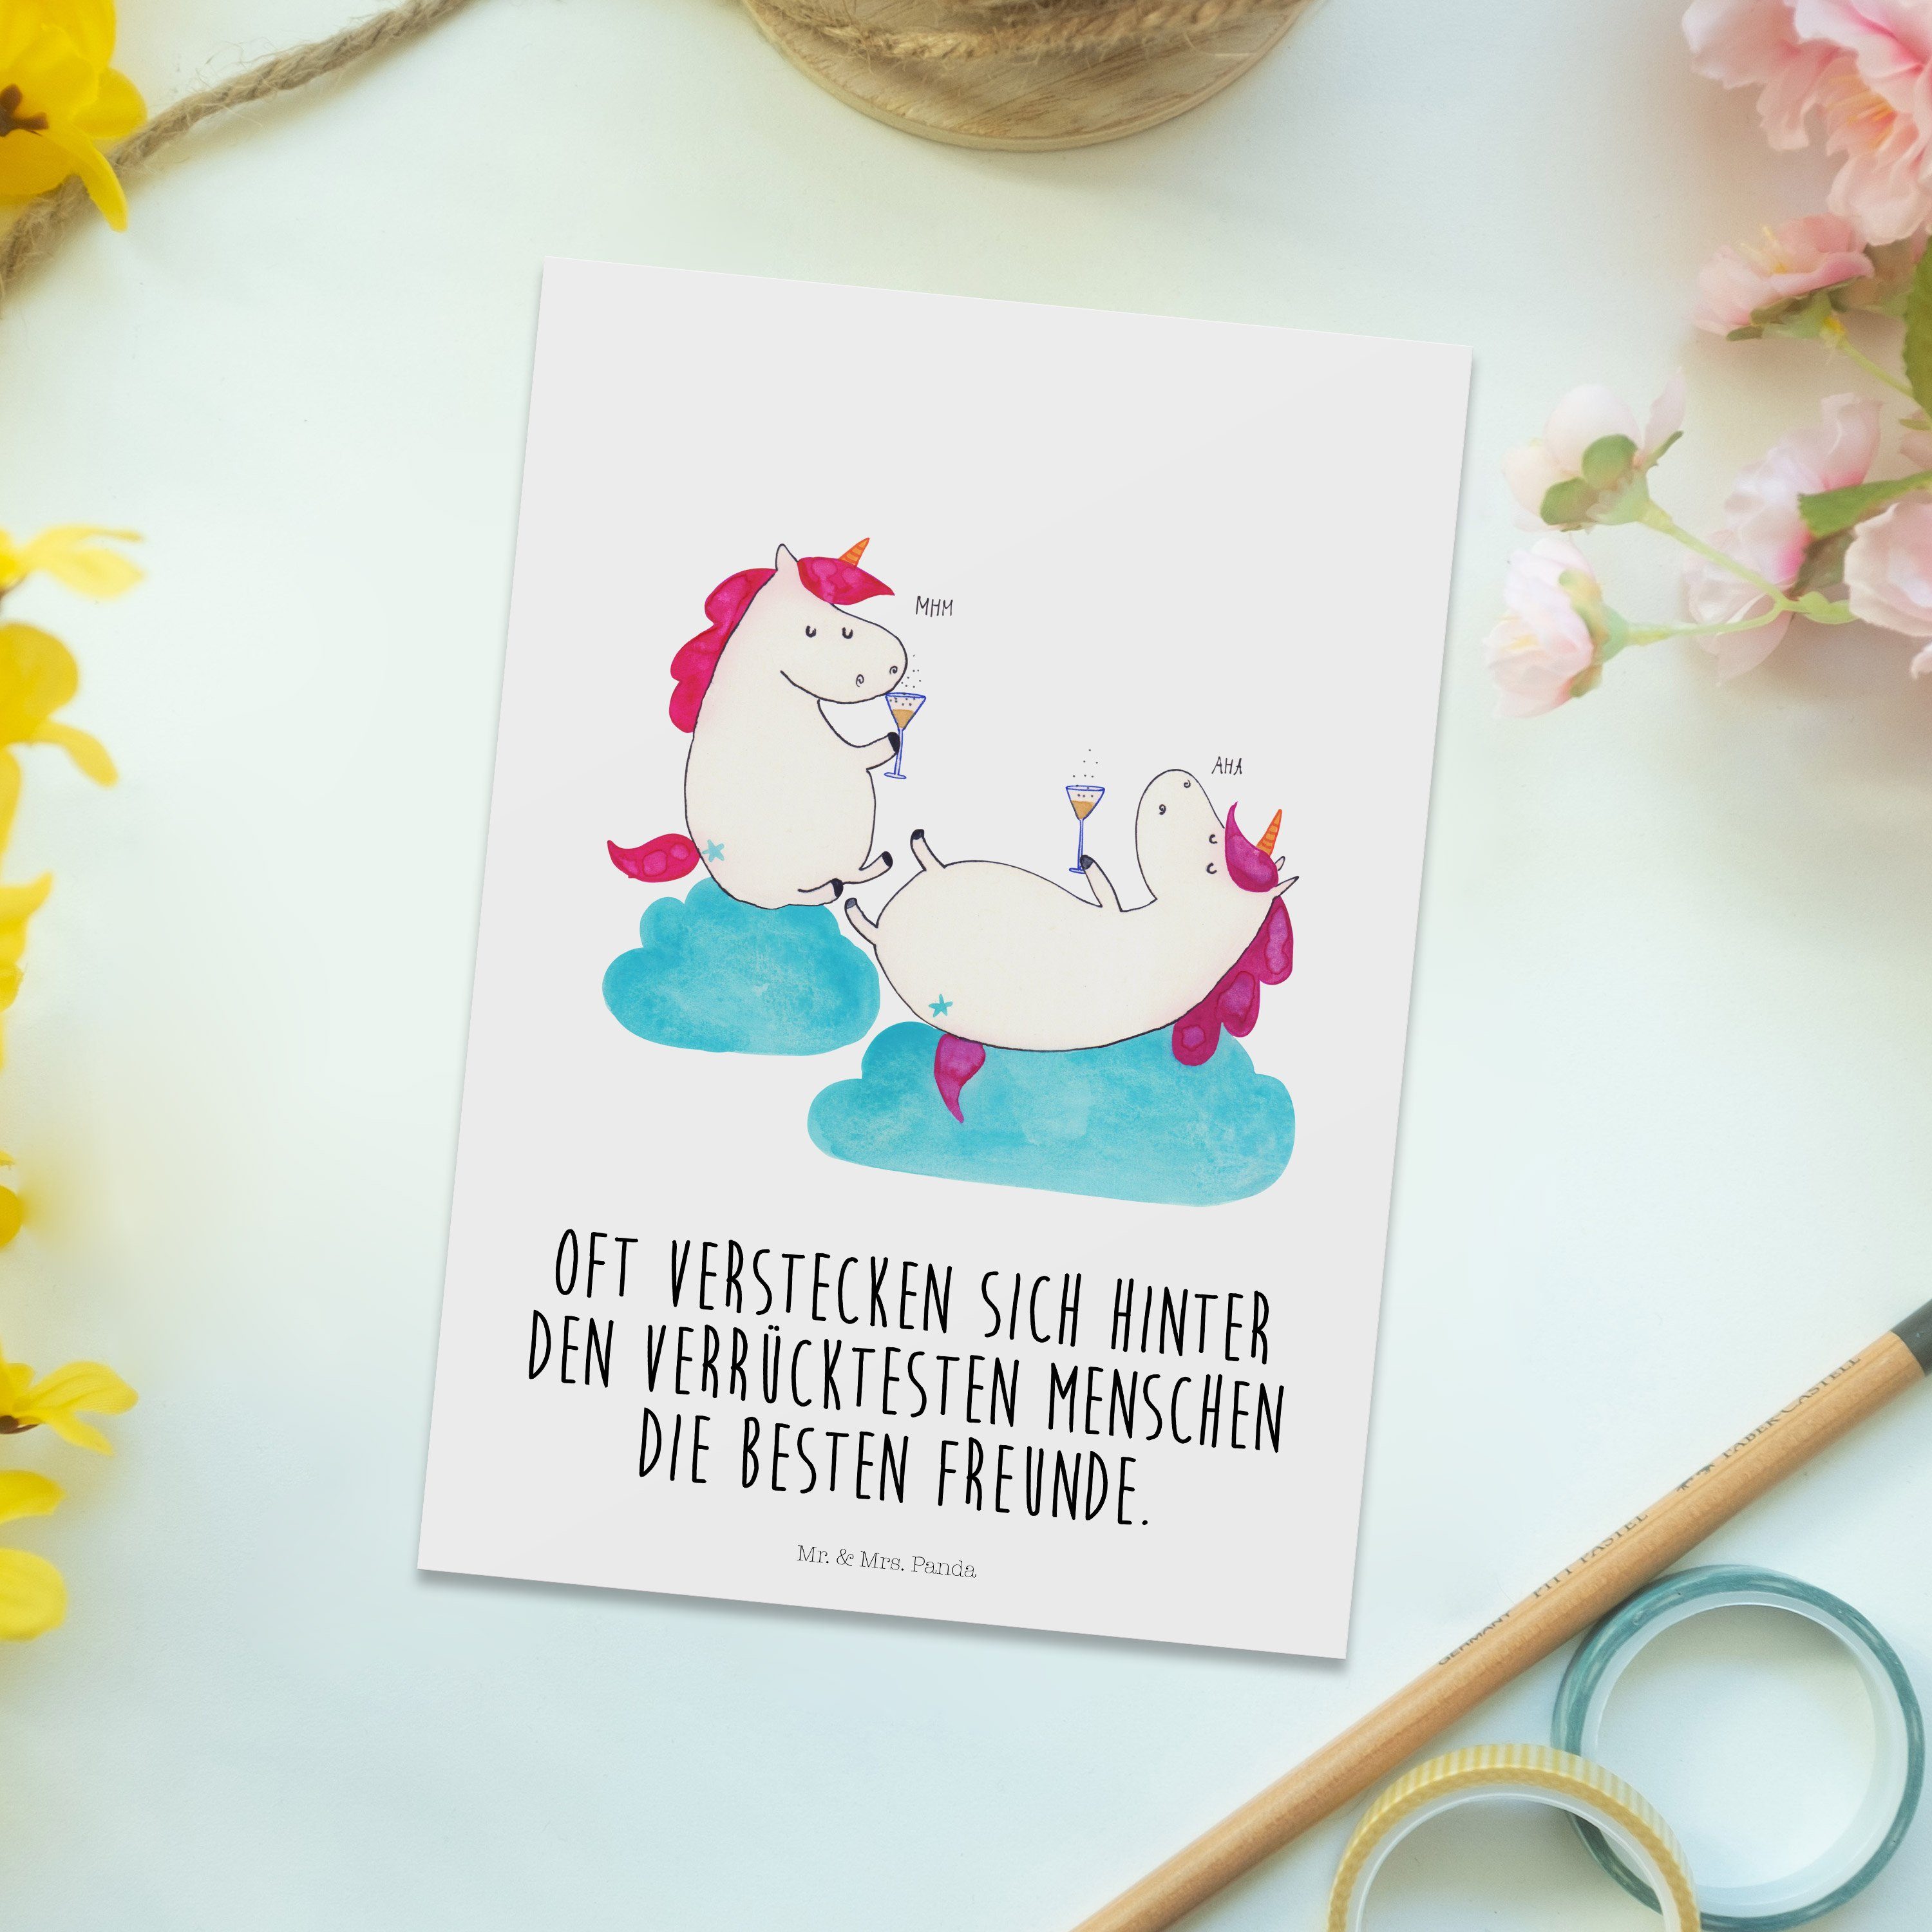 Mr. & Mrs. Panda - Einladungskarte, Weiß - Anstoßen Pegasus, Einhörner Postkarte Geschenk, Sekt